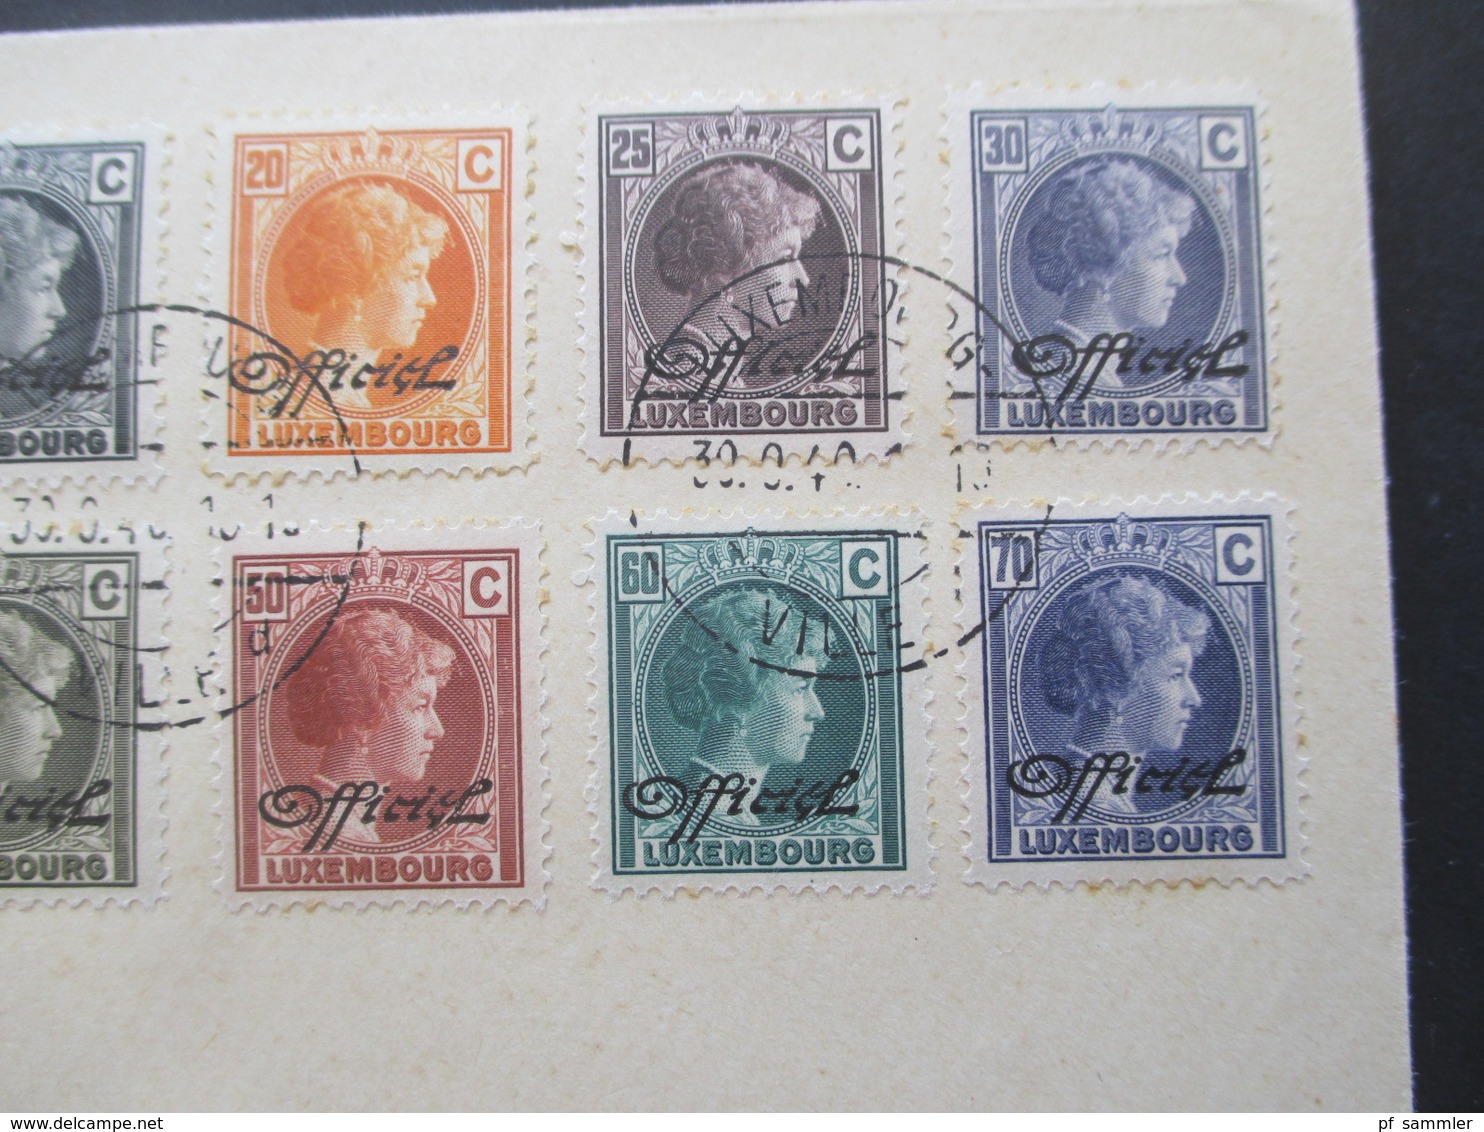 Luxemburg 1940 Dienstmarken Freimarken Mit Aufdruck Officiel 18 Werte Auf 2 Blano Umschlägen 5 Cent - 1 3/4 Fr. - Oficiales